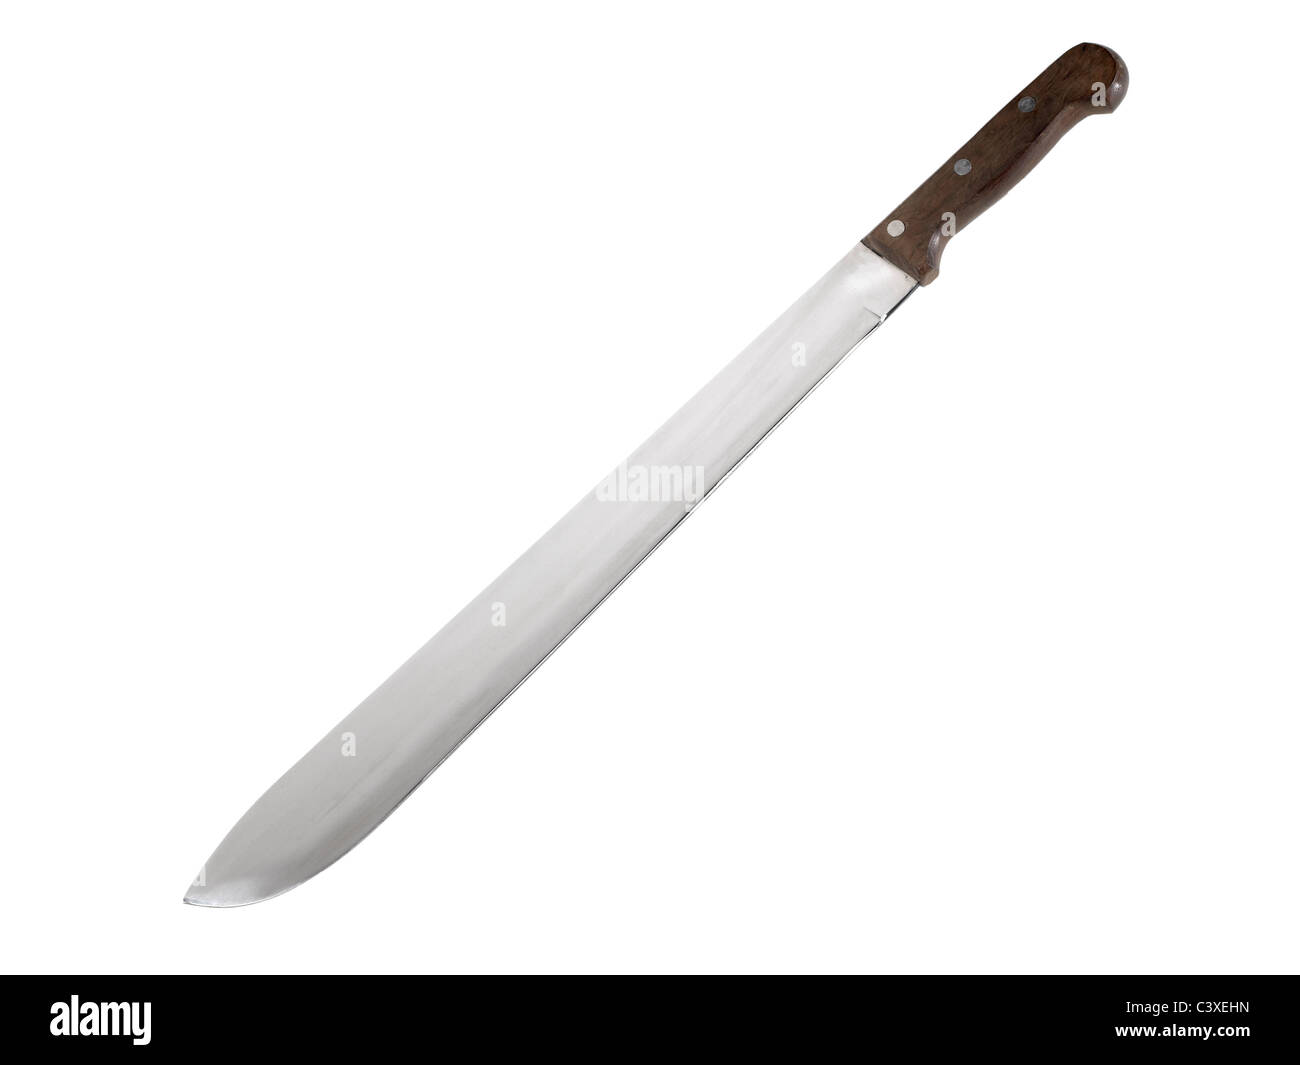 File:Giant Knife 1.jpg - Wikipedia